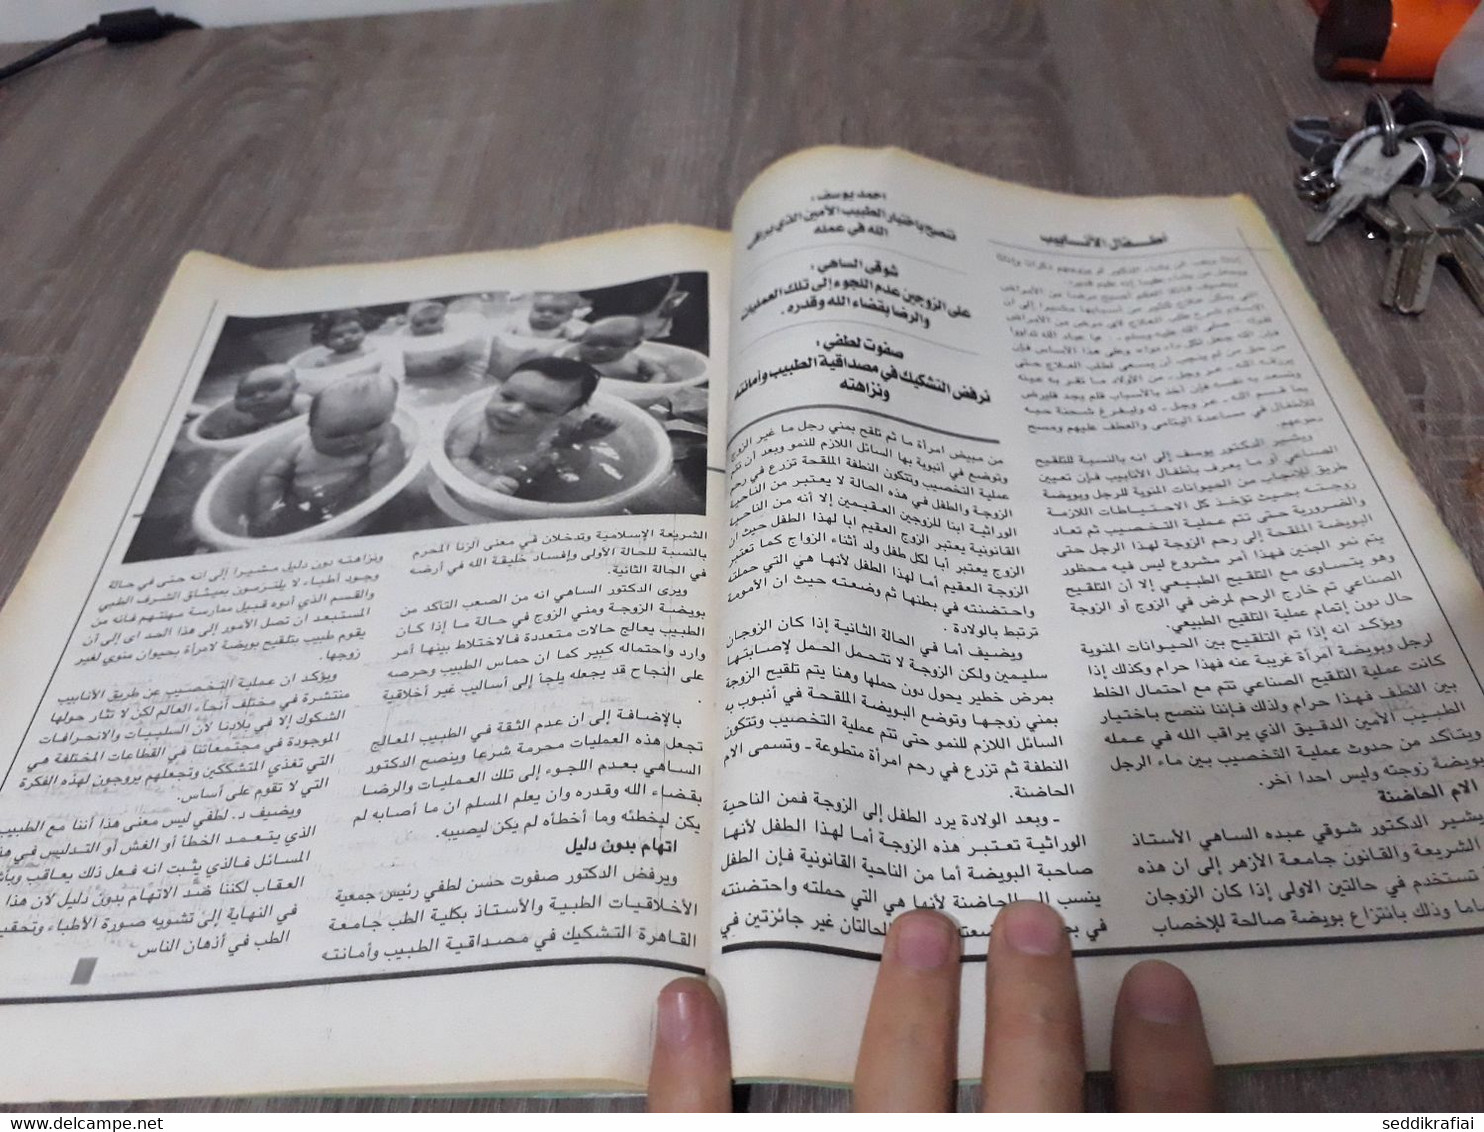 Magazine Arabic Egyptian Islamic Mysticism 2013 - مجلة التصوف الاسلامي العدد 415 - Zeitungen & Zeitschriften